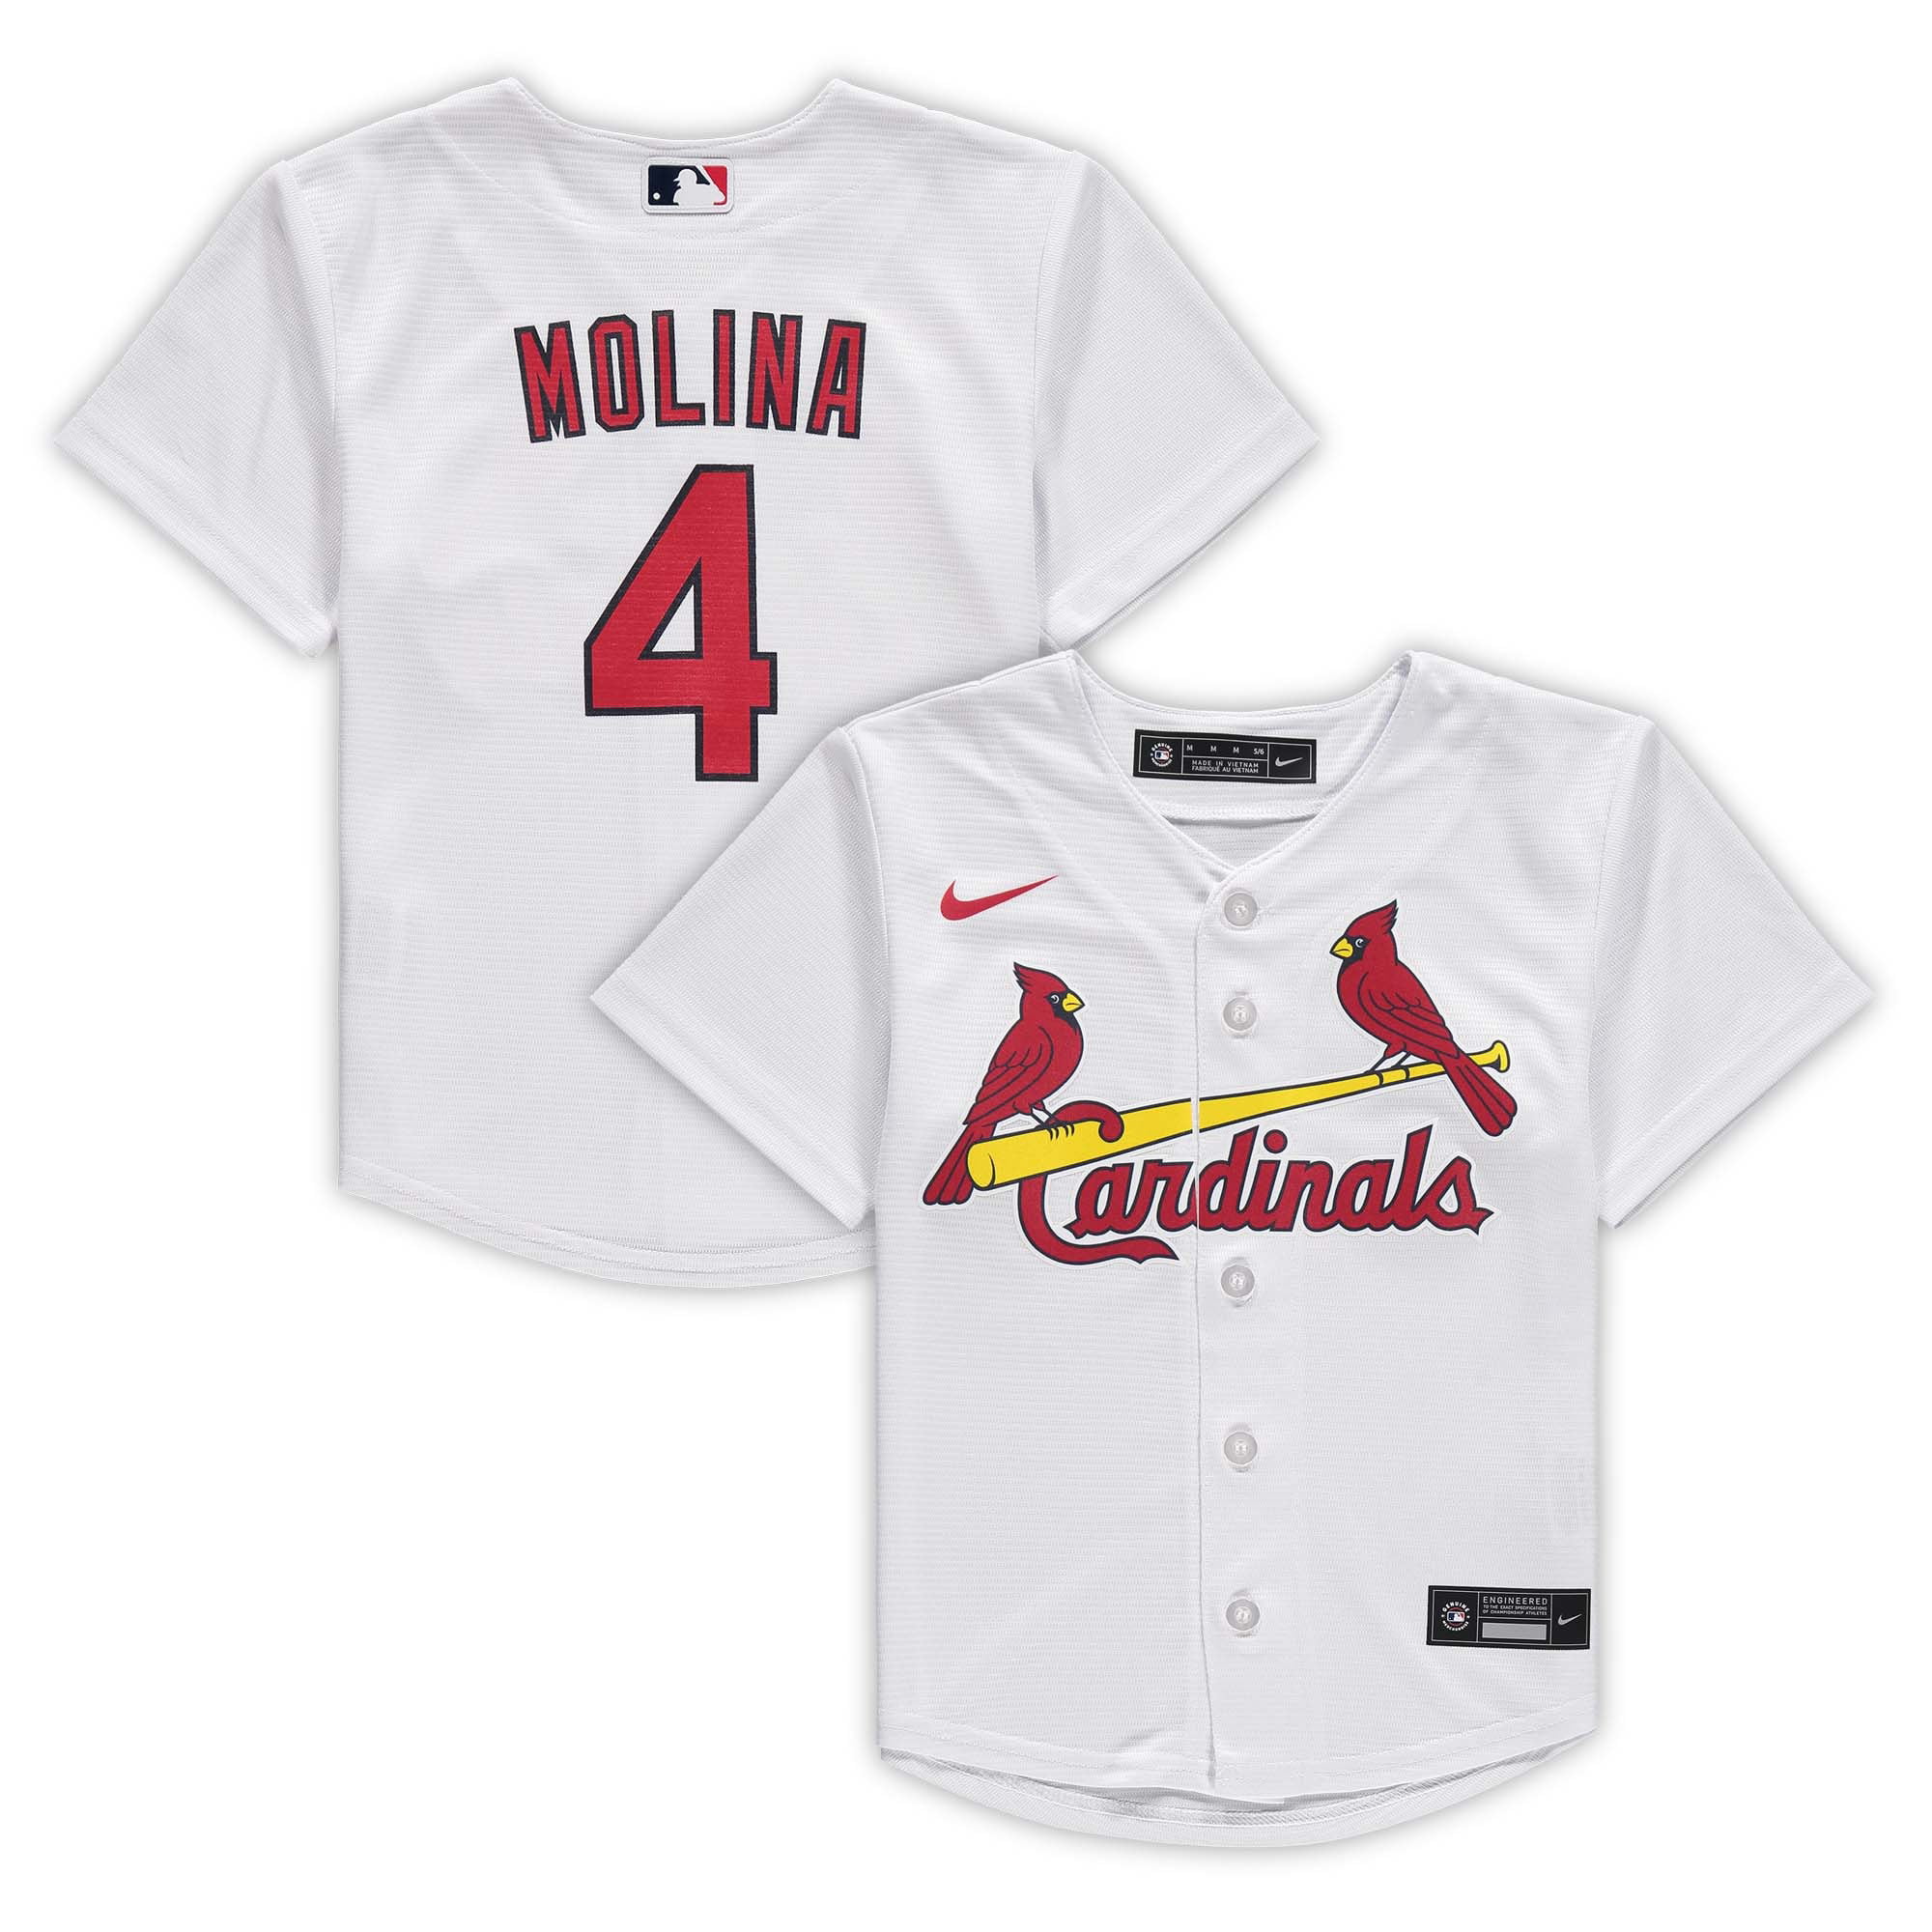 molina cardinals jersey